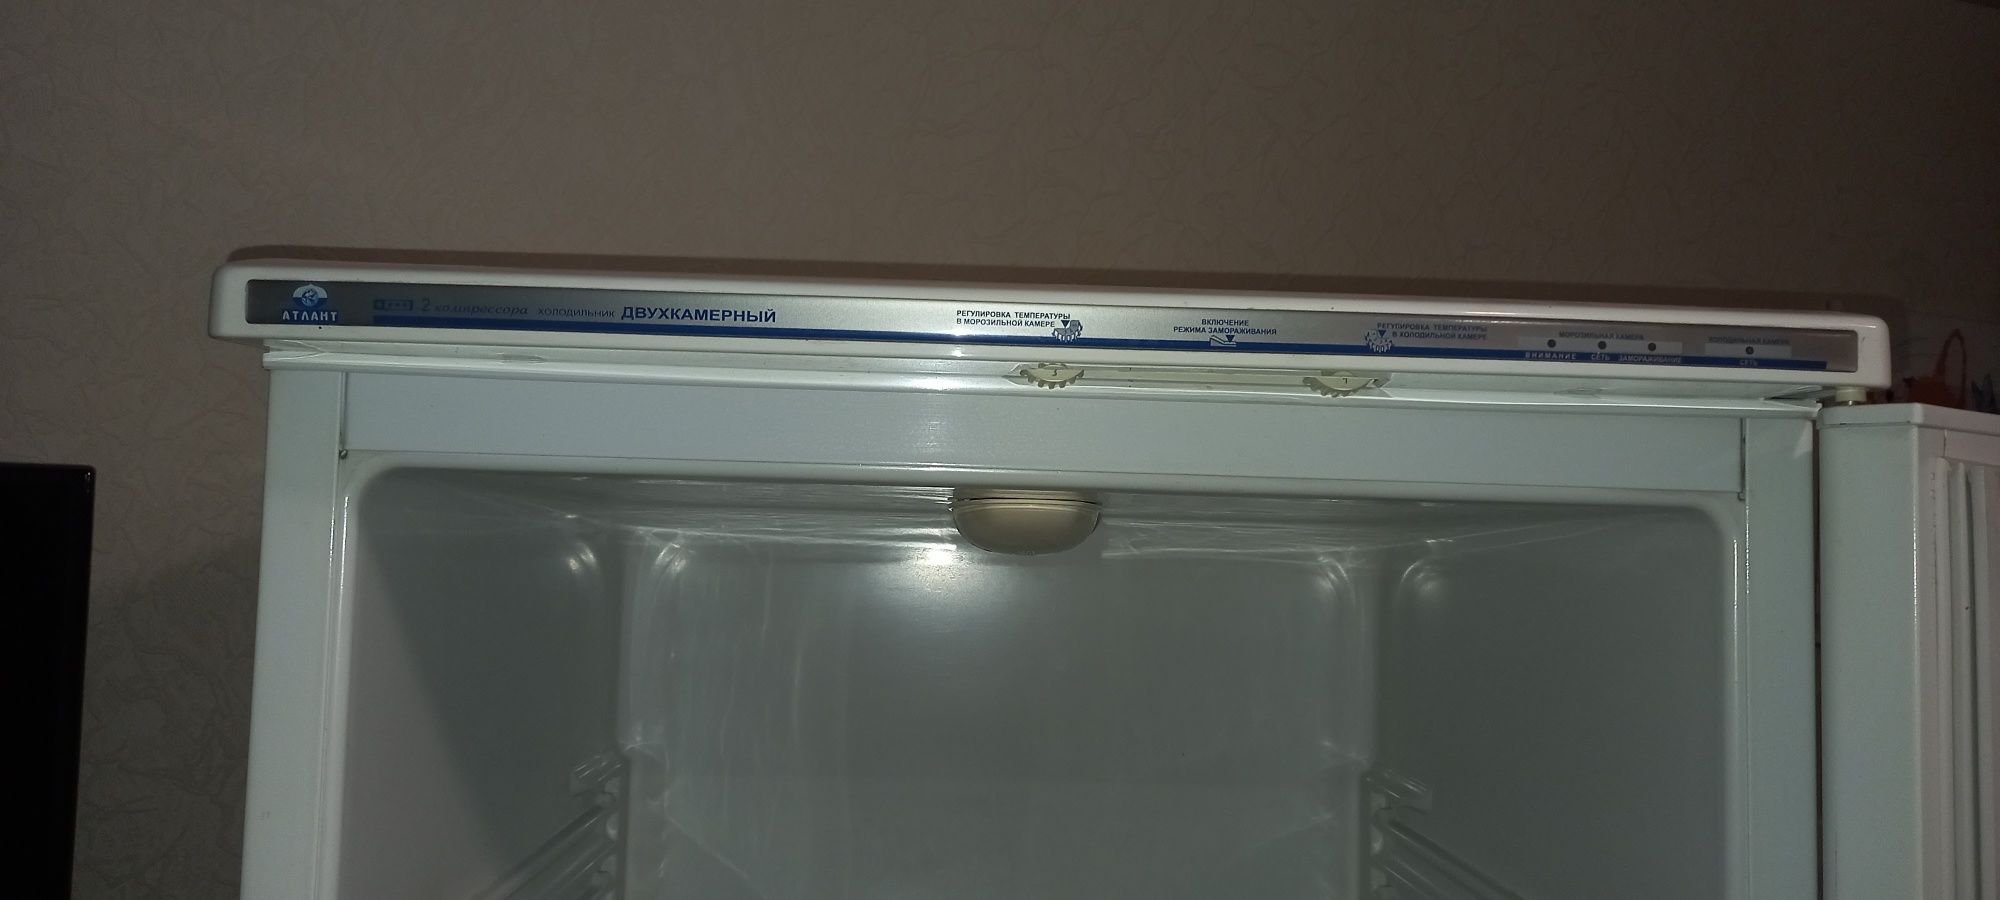 Холодильник Атлант 6021